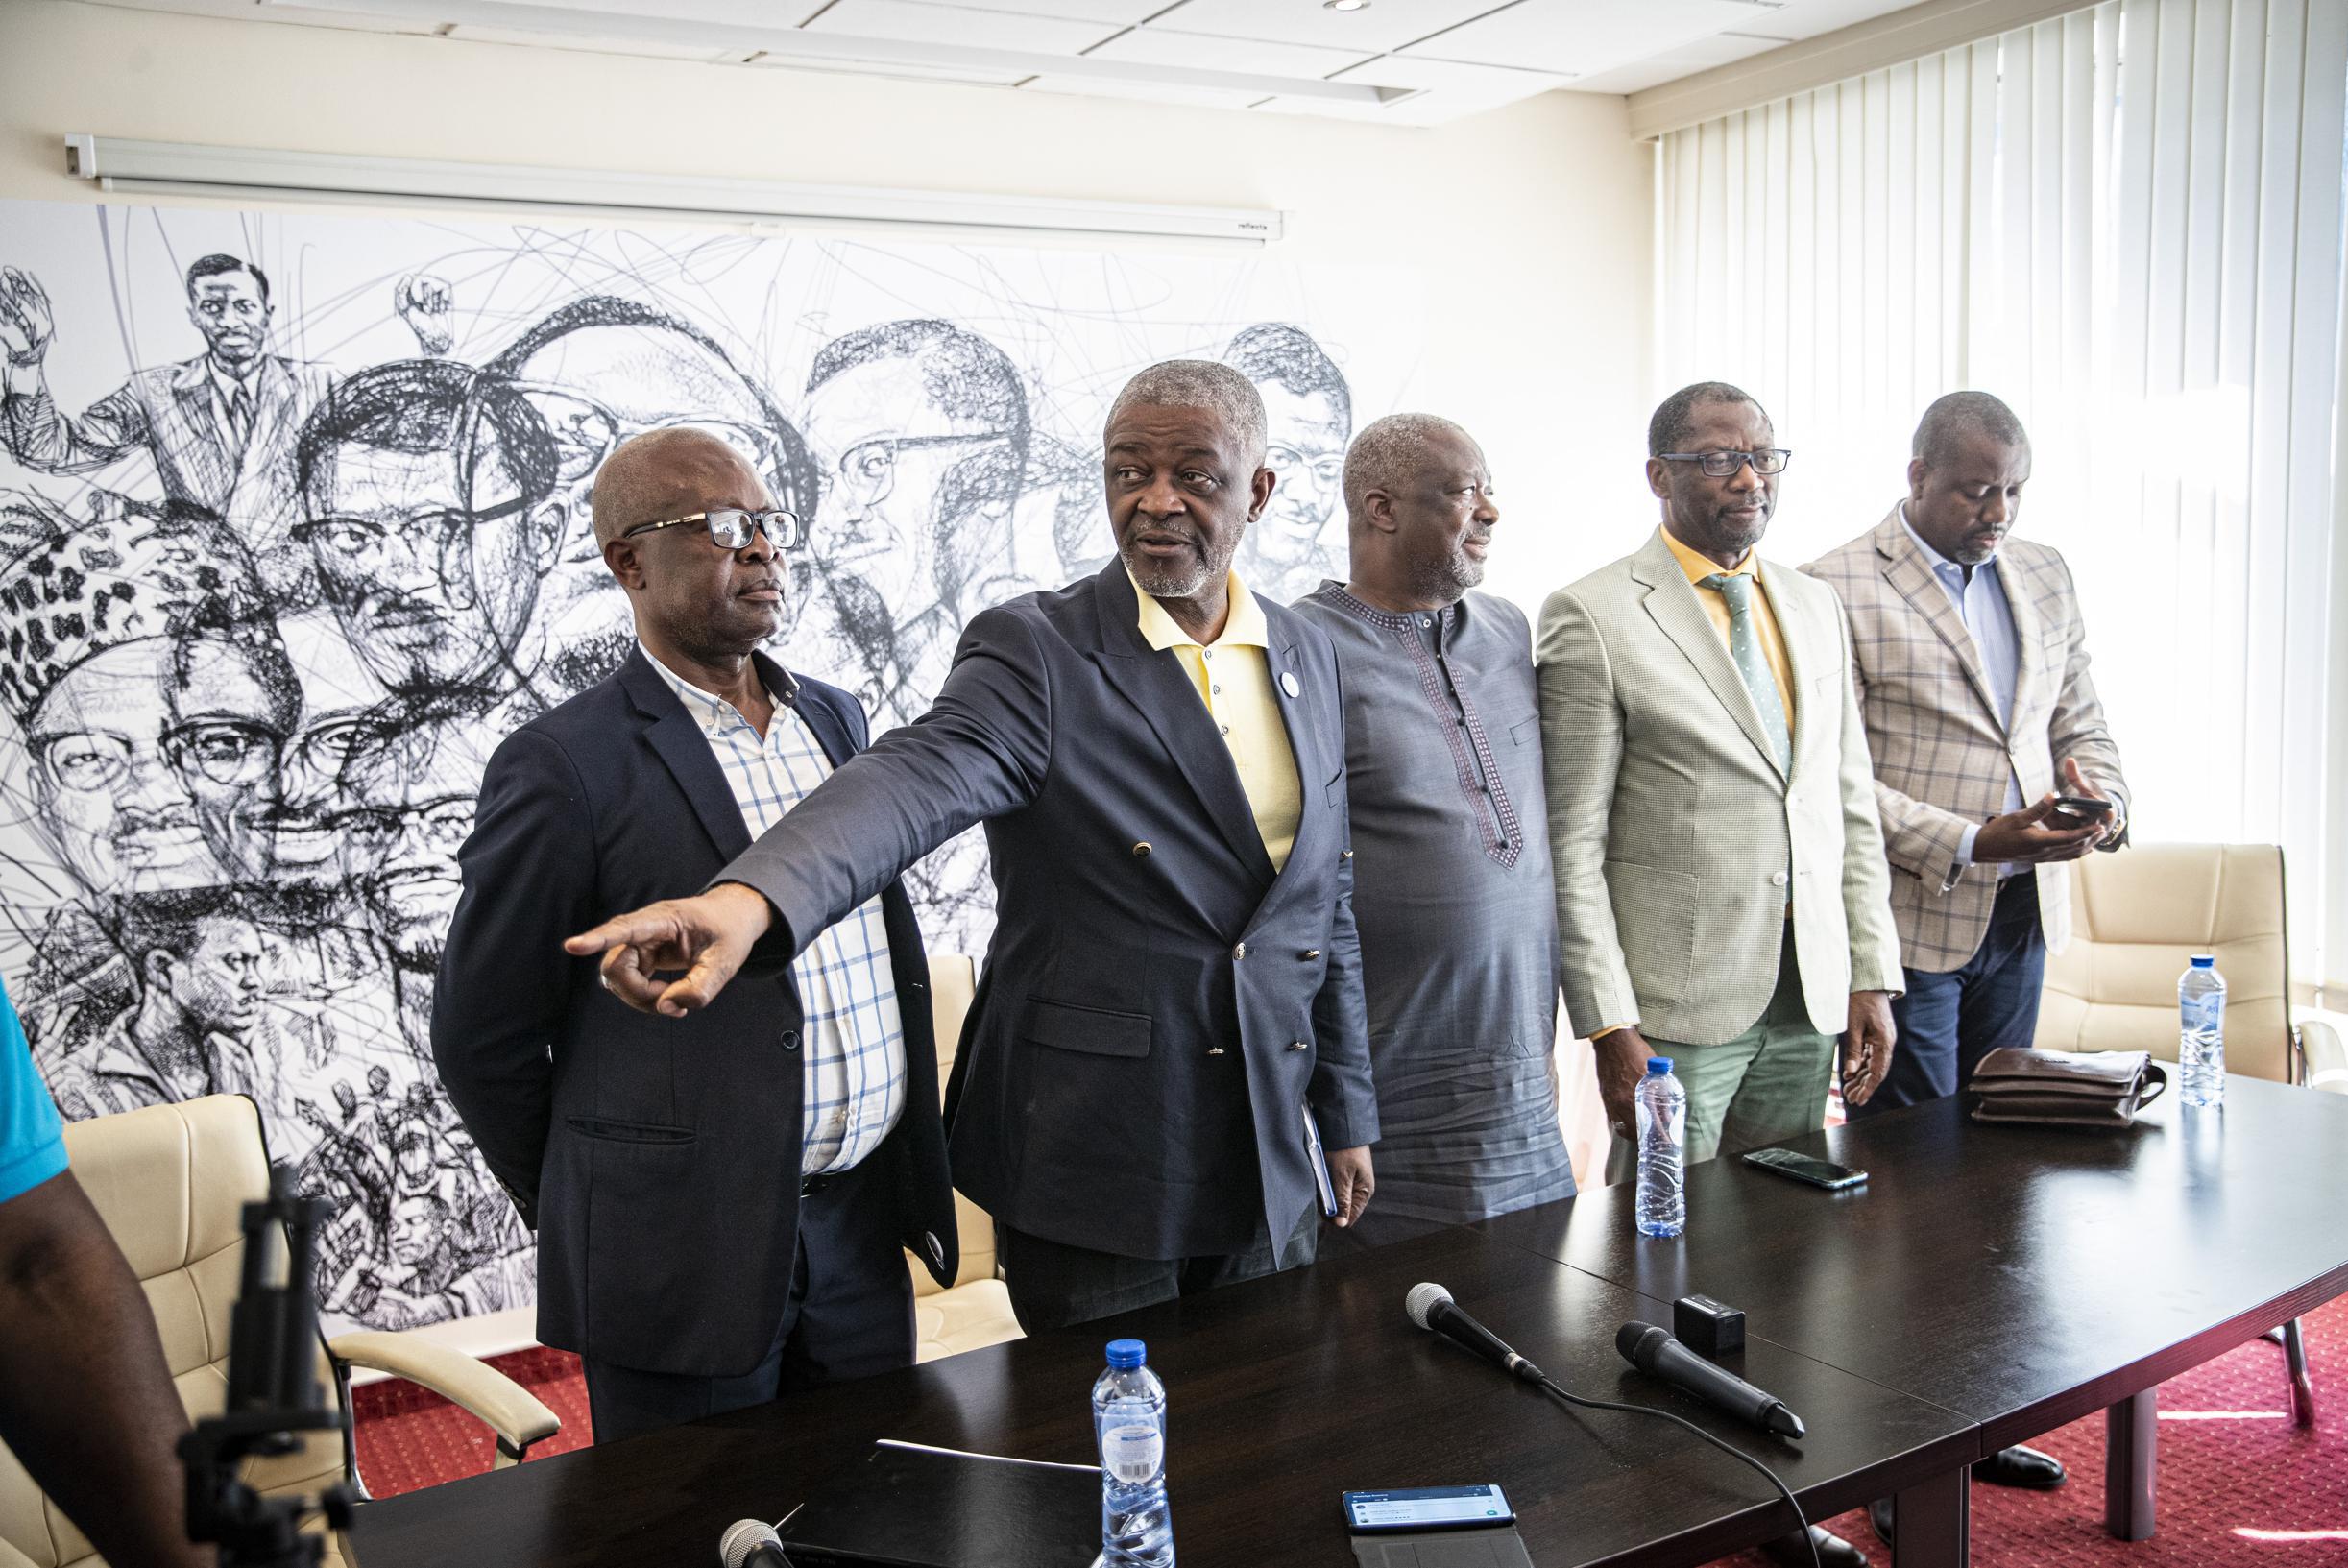 “Teruggave stoffelijk overschot Lumumba zal gerechtelijke procedure niet stoppen”